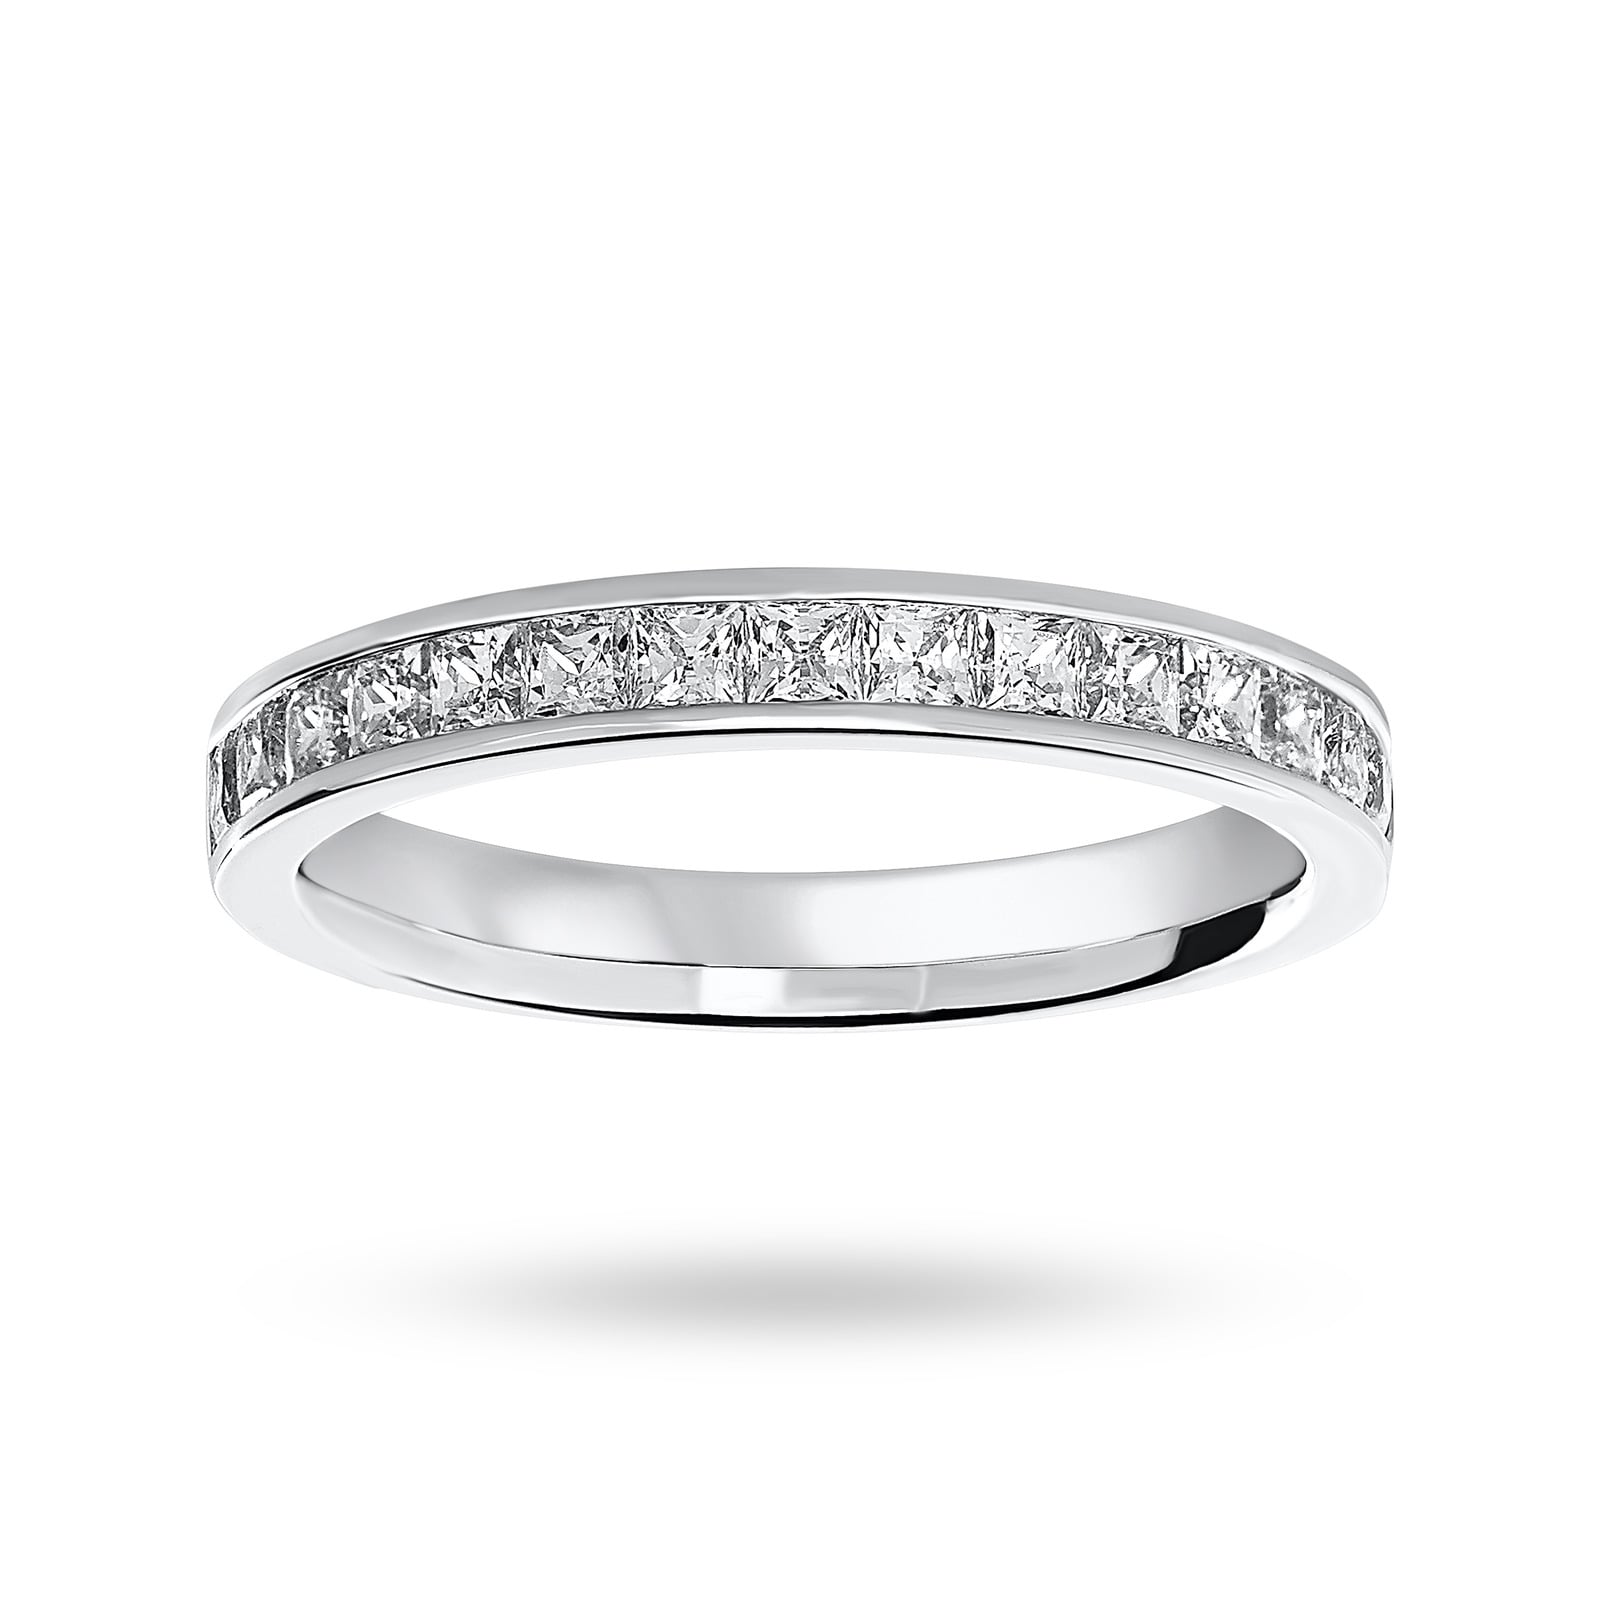 18 Carat White Gold 0.75 Carat Princess Cut Half Eternity Ring - Ring Size P